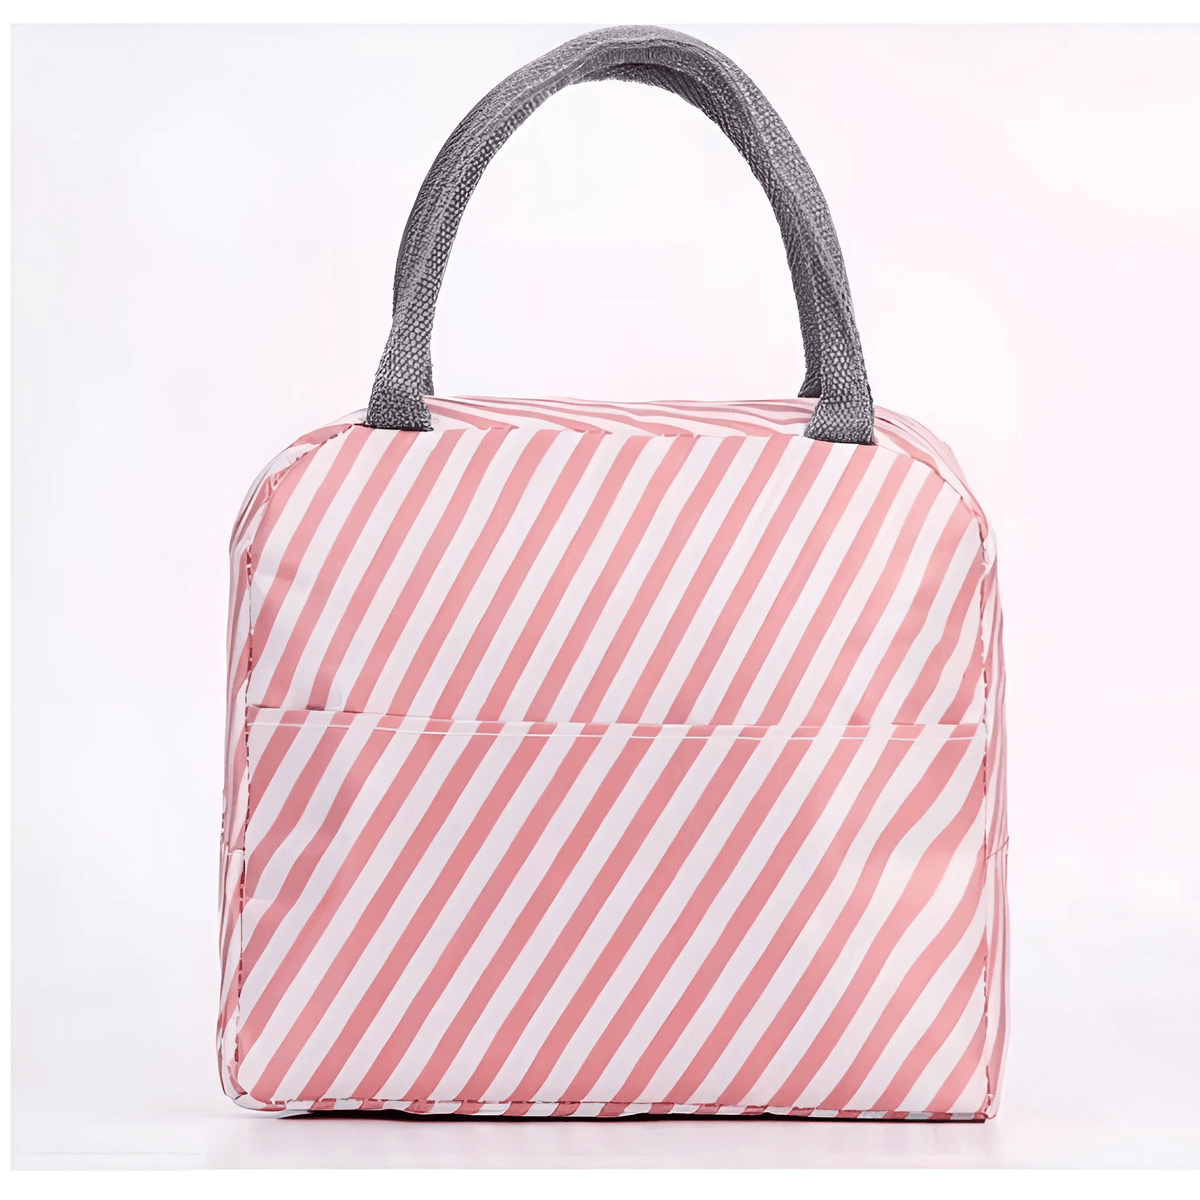 Bolsa térmica portátil com rosa com listras brancas na diagonal e alça cinza